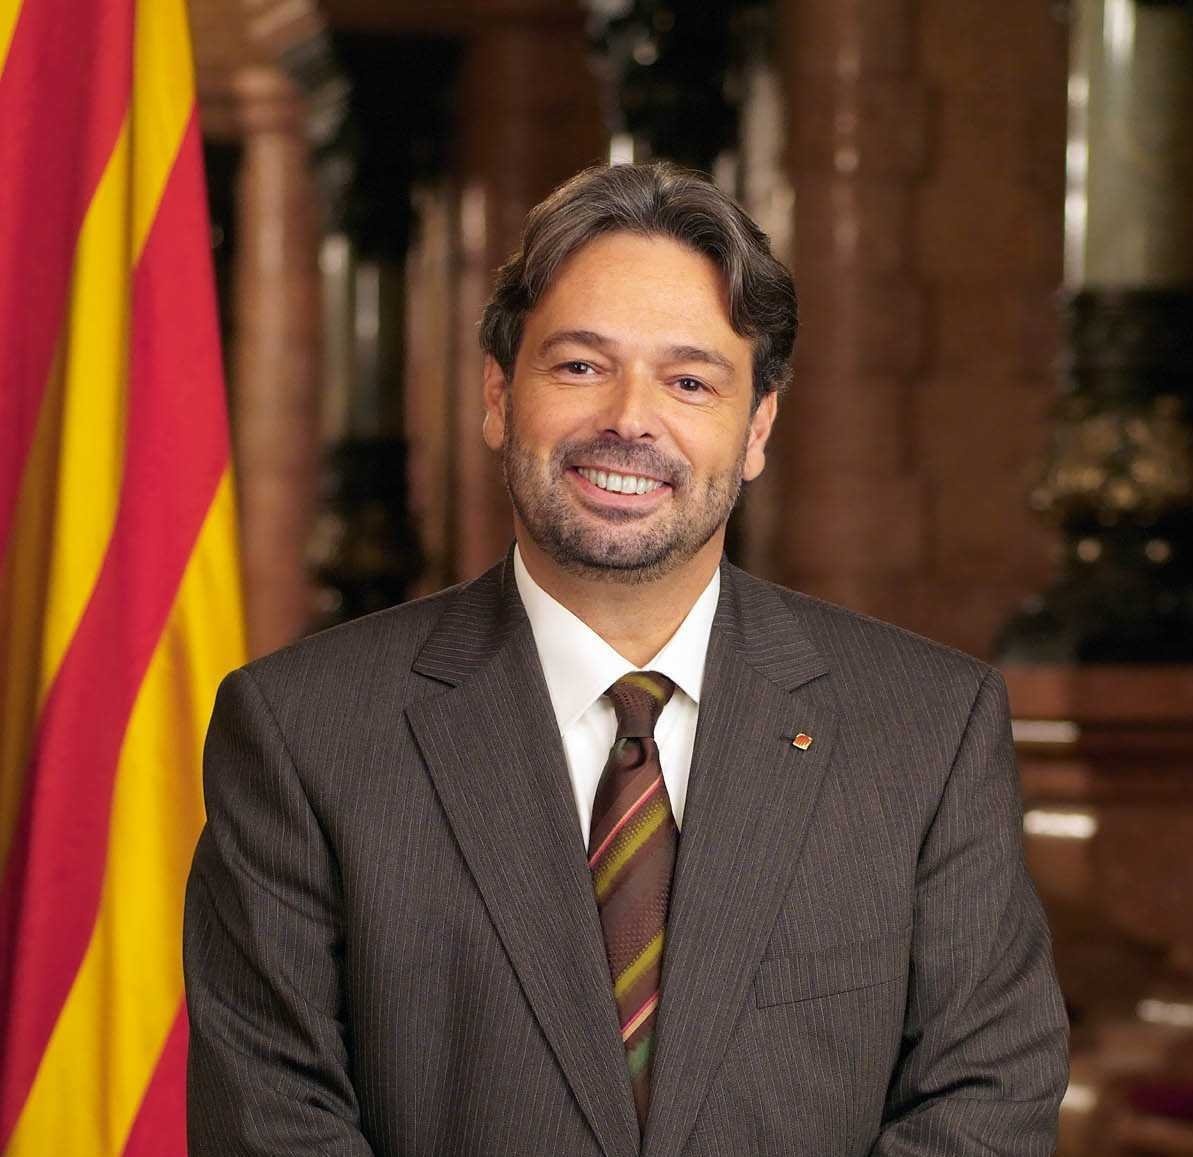 El president Benach, en una fotografia oficial del Parlament de Catalunya.